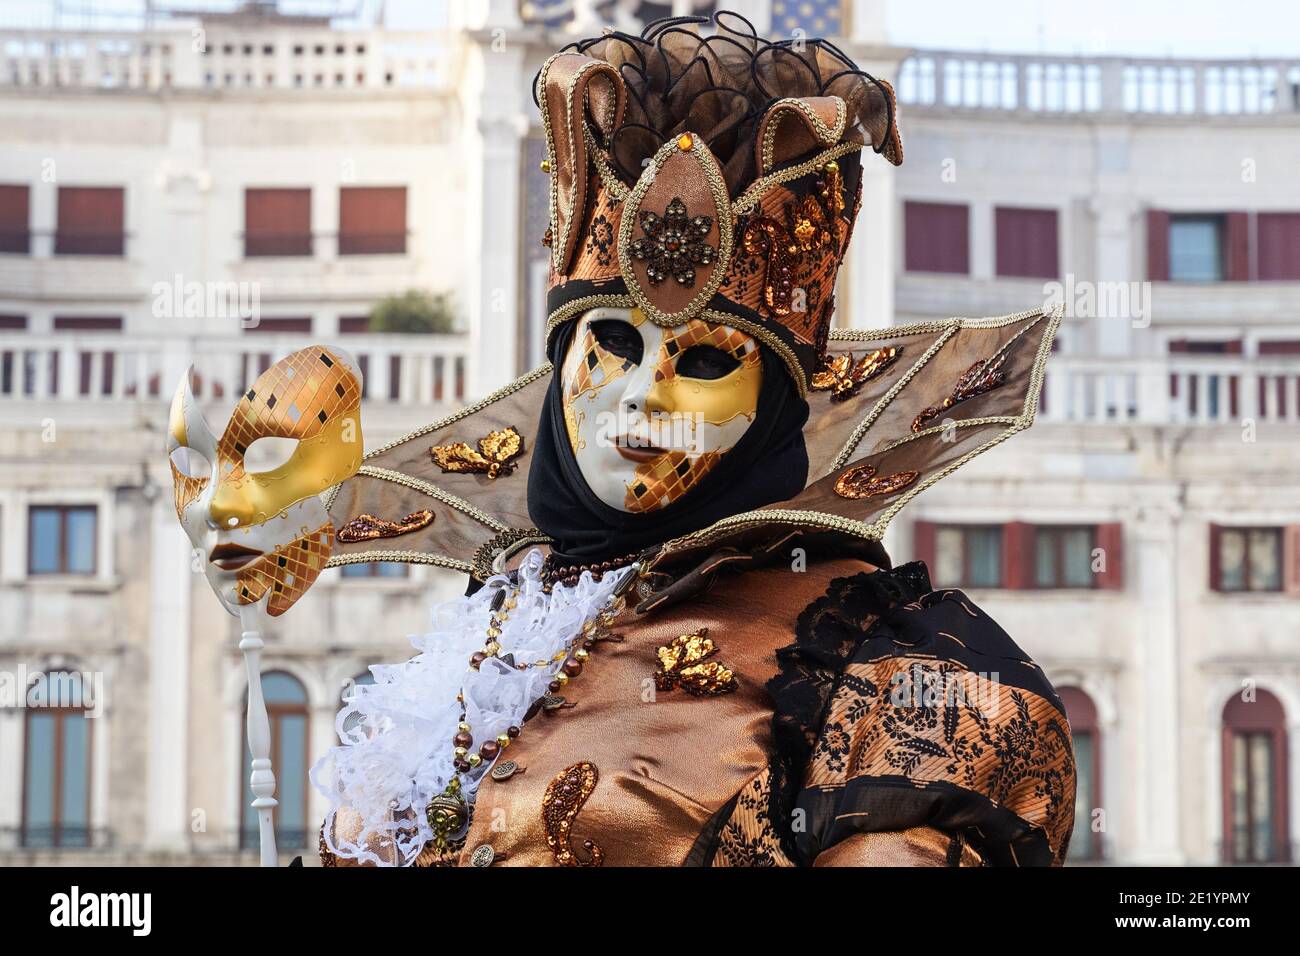 Homme vêtu d'un costume traditionnel décoré et d'un masque peint lors du Carnaval de Venise à Venise, en Italie Banque D'Images